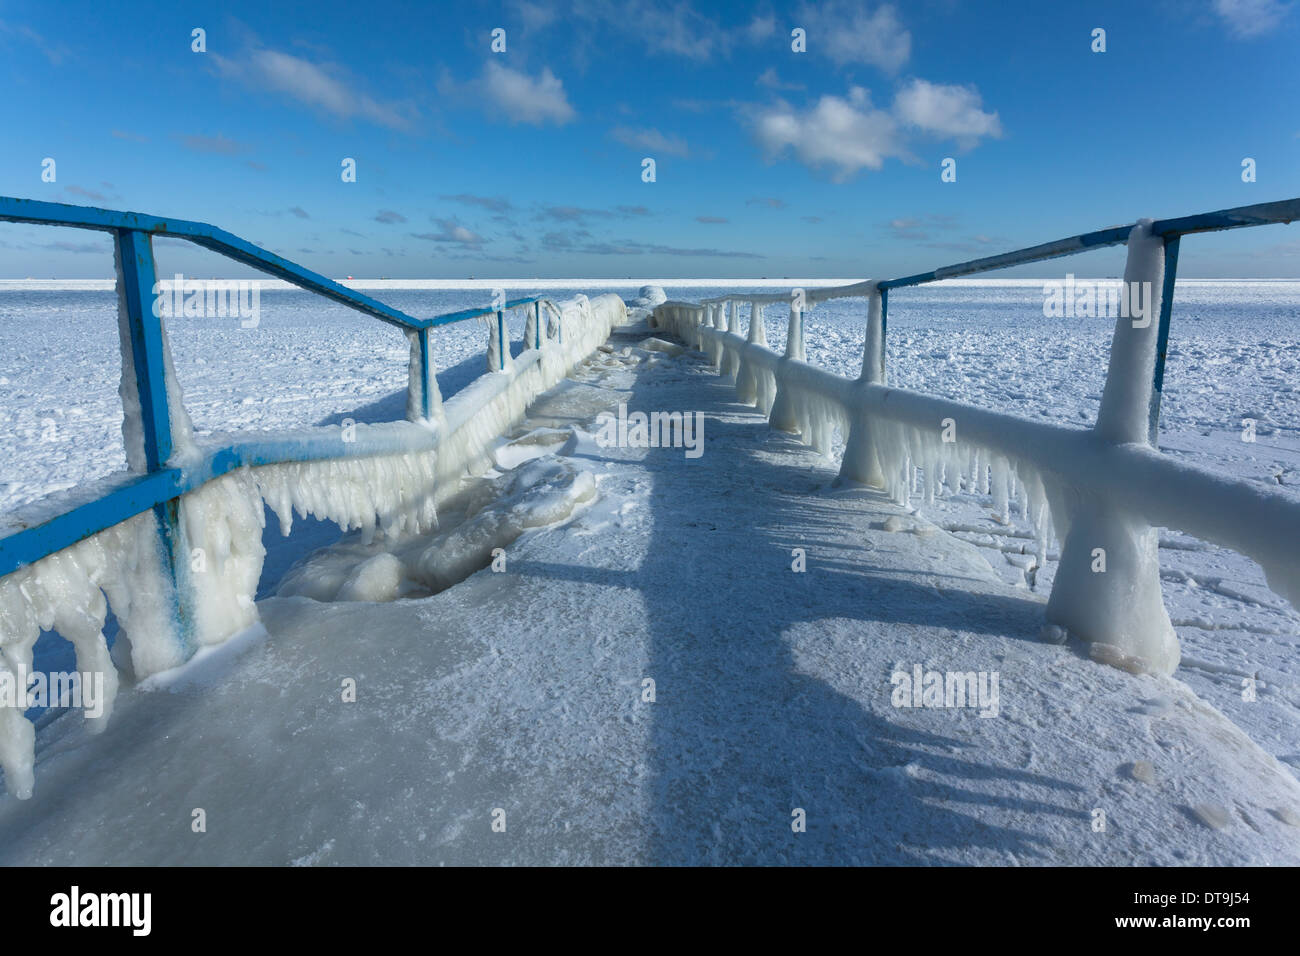 icy pier sea horizon perspective Stock Photo